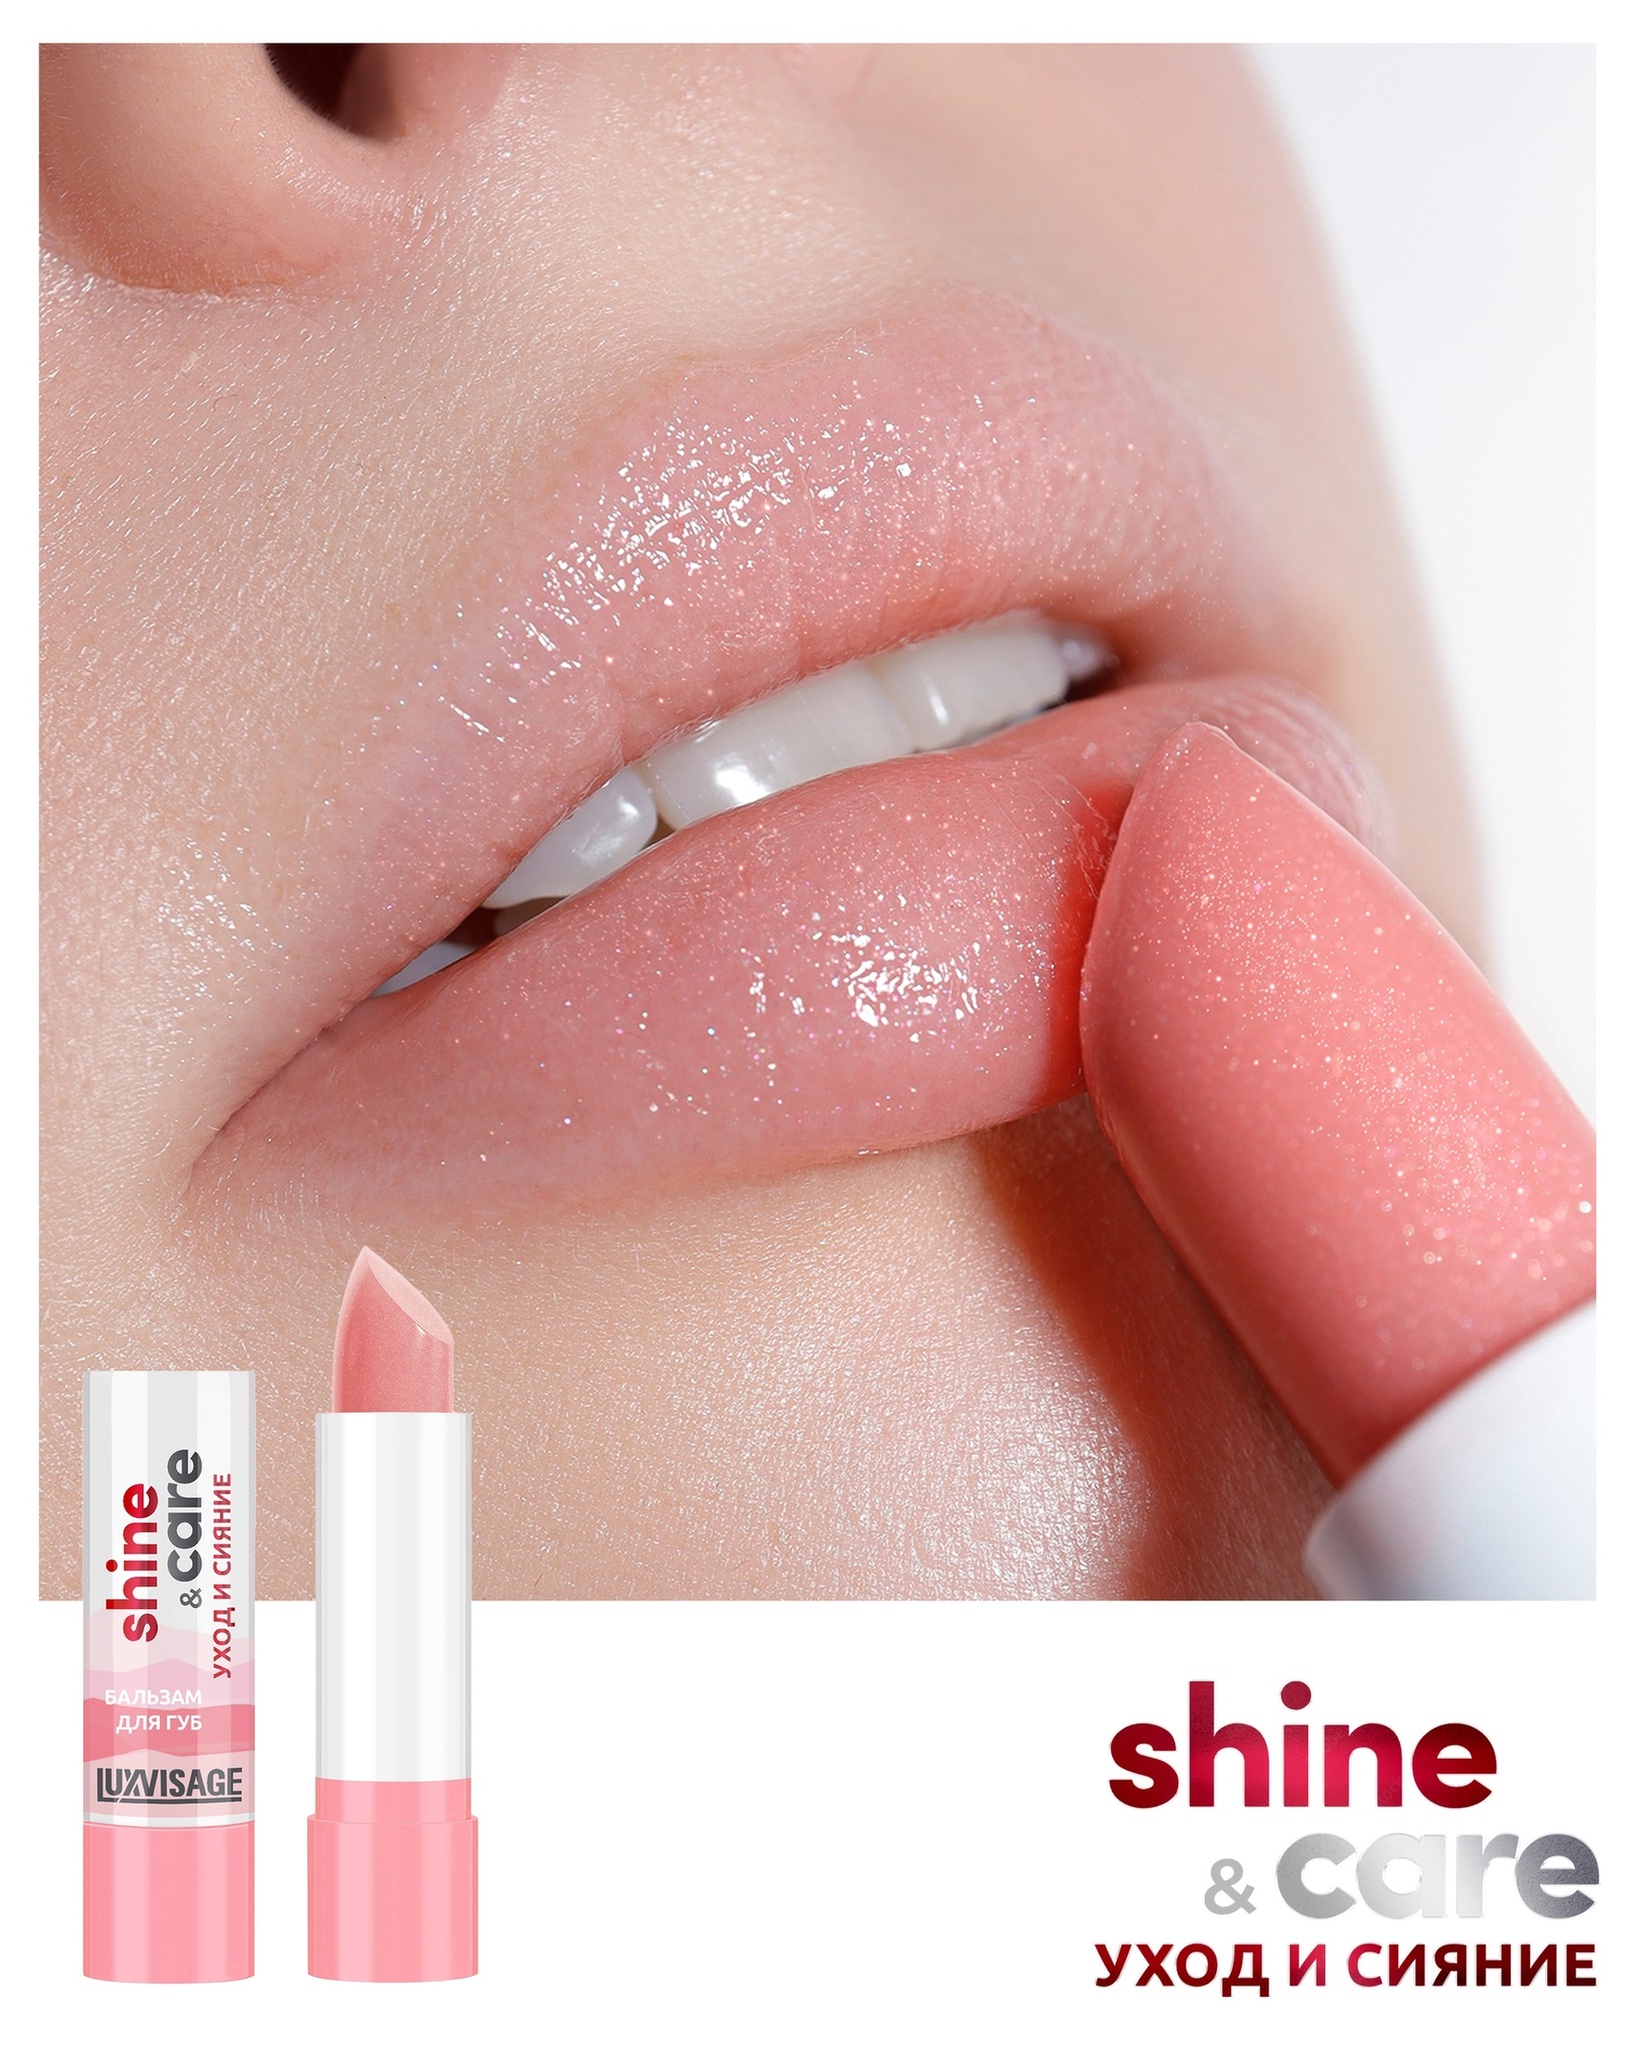 LuxVisage Бальзам для губ  shine & care уход и сияние 3,9г